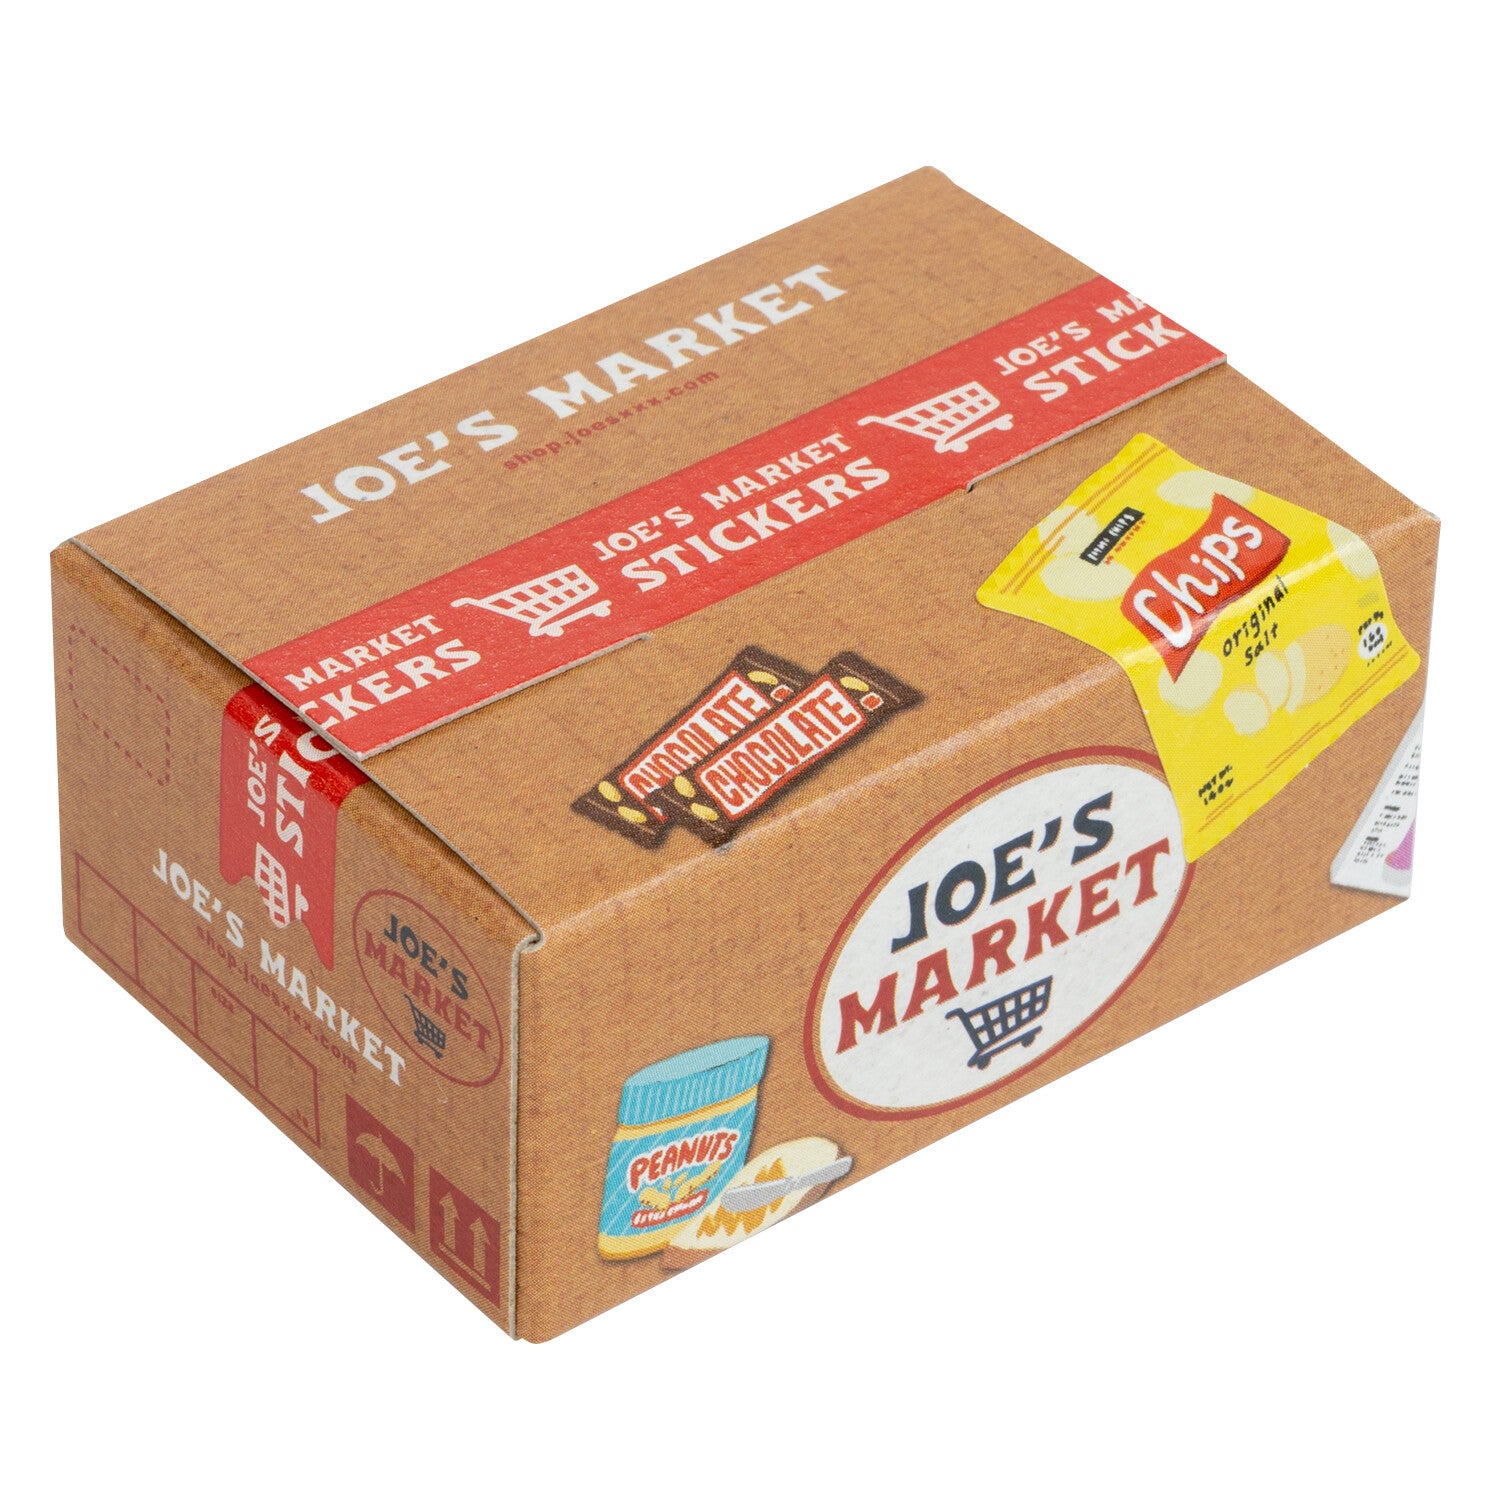 Miniature Shipping Box Flake Sticker Set - Grocery Store – Saiko Stationery